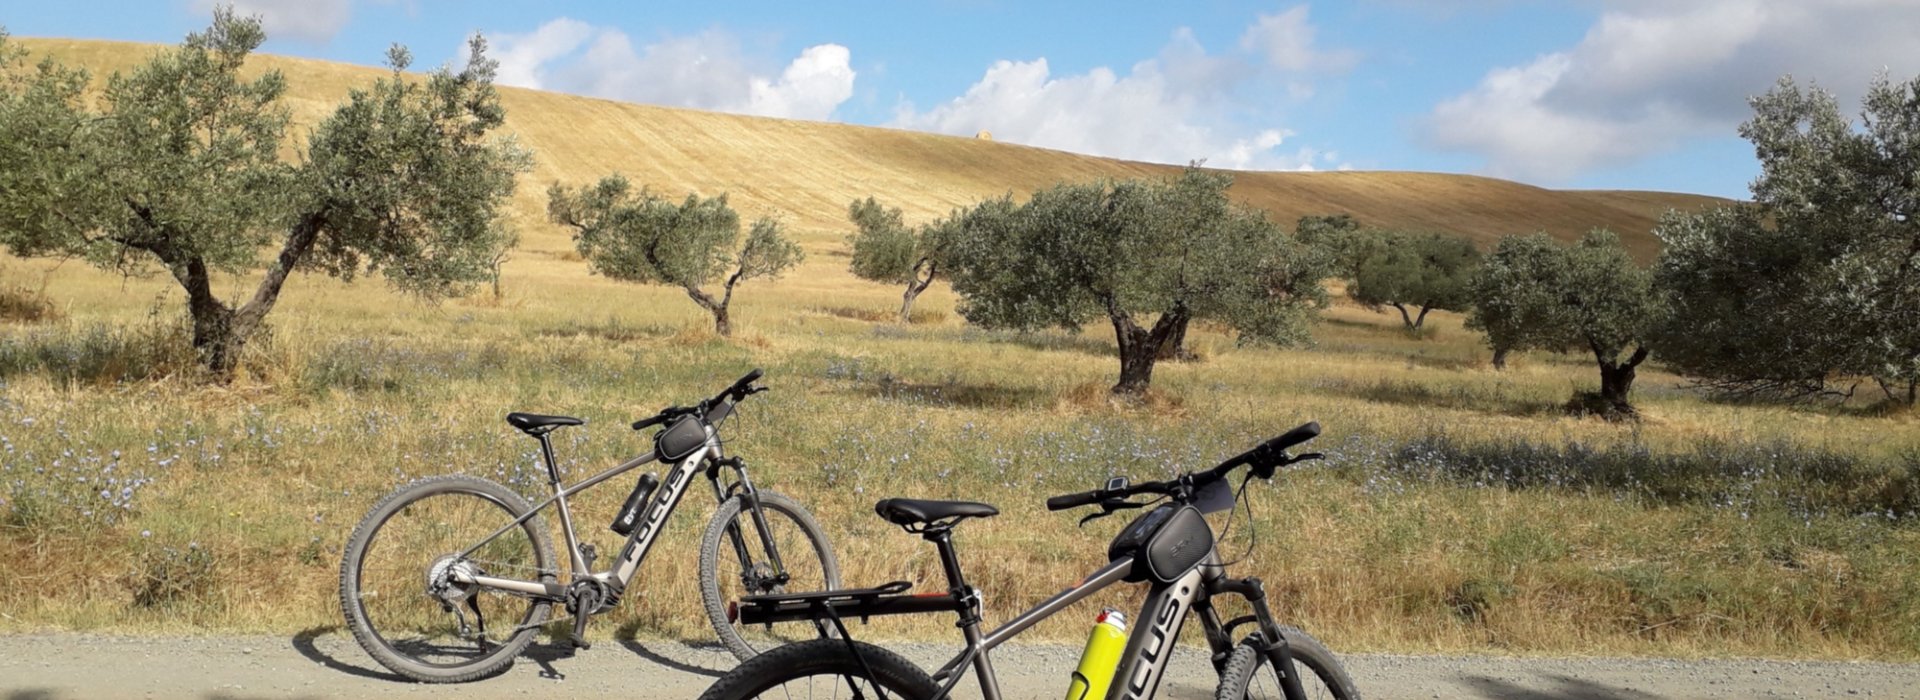 E-bike experience durante il tour nella campagna toscana di Casale Marittimo